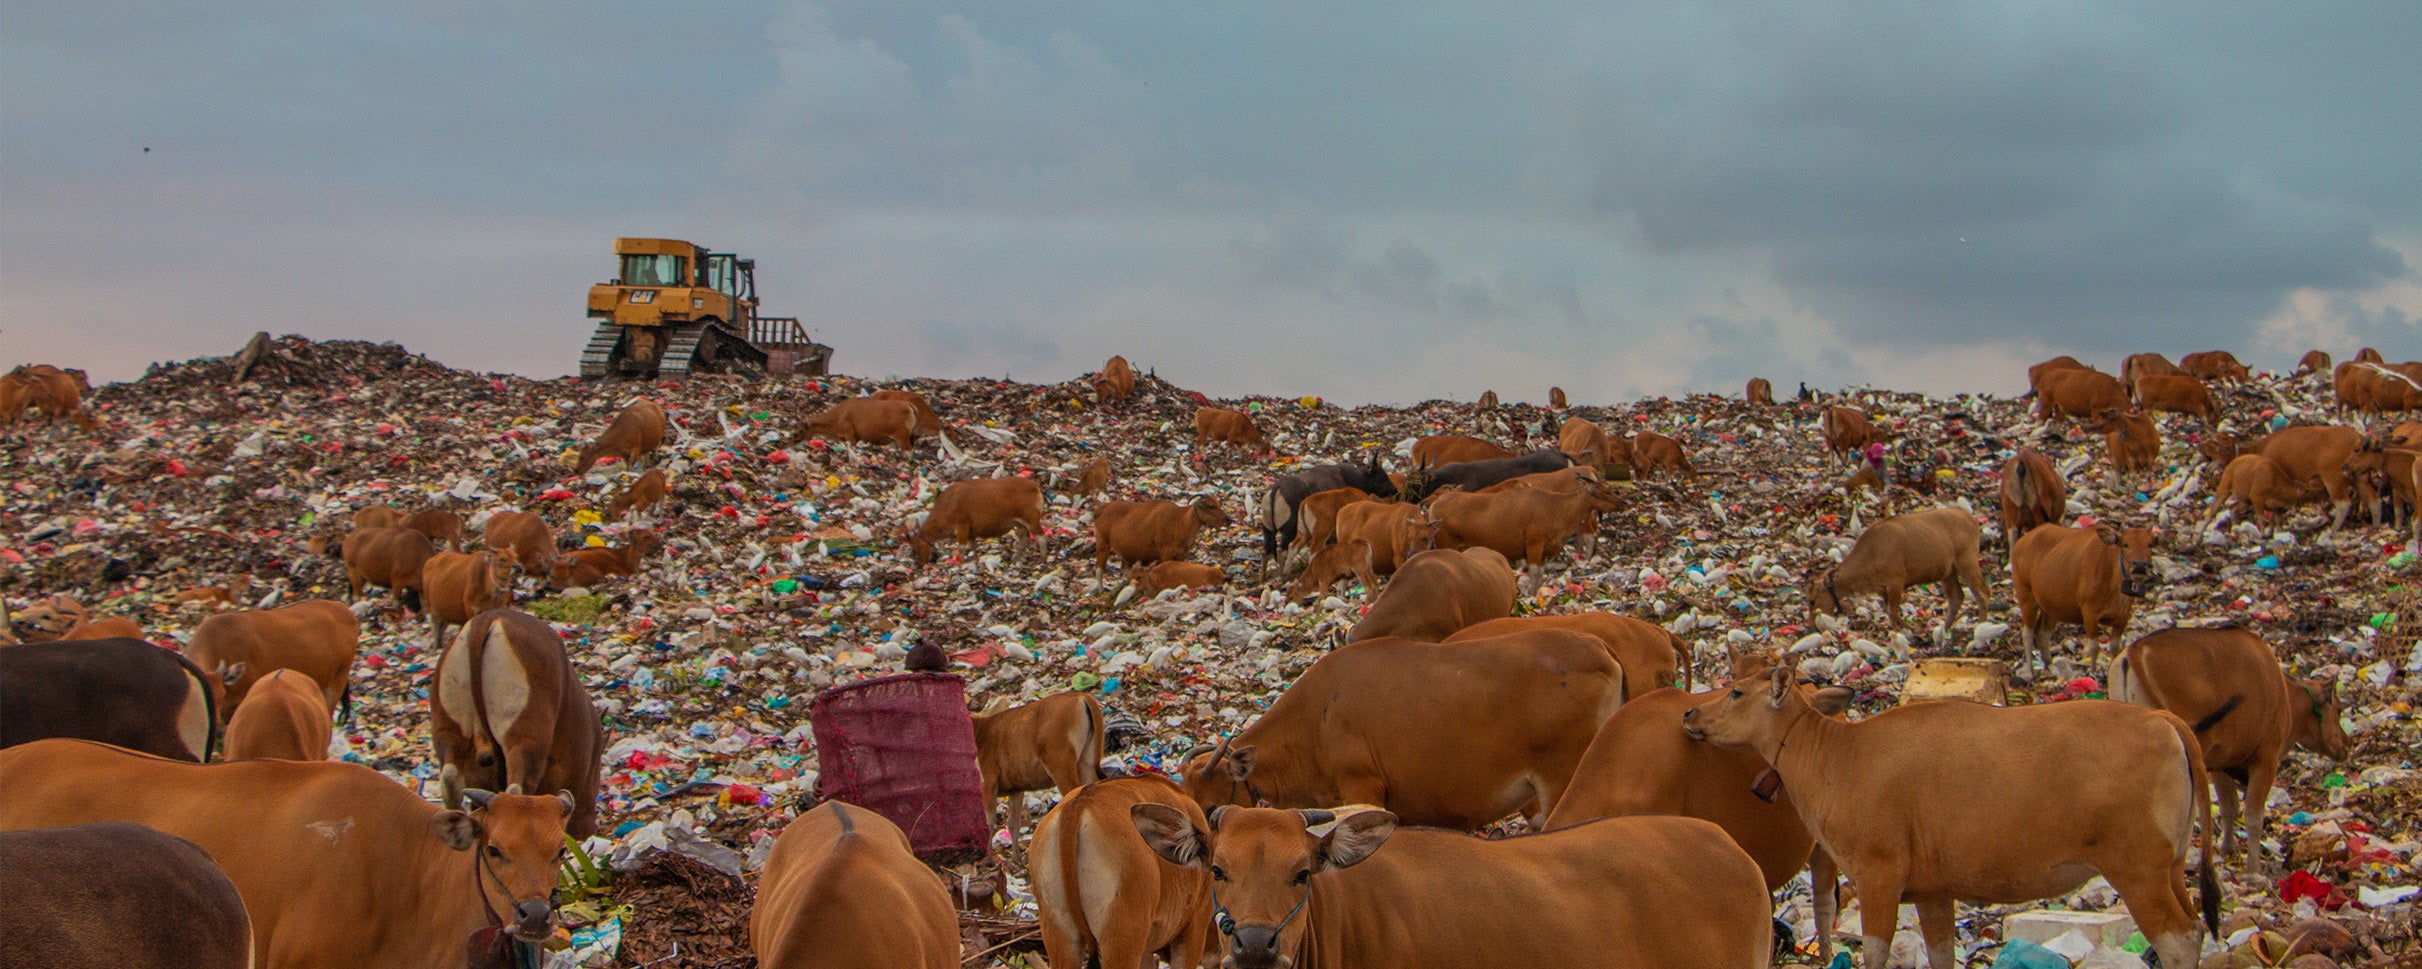 Suwung landfill in Bali.